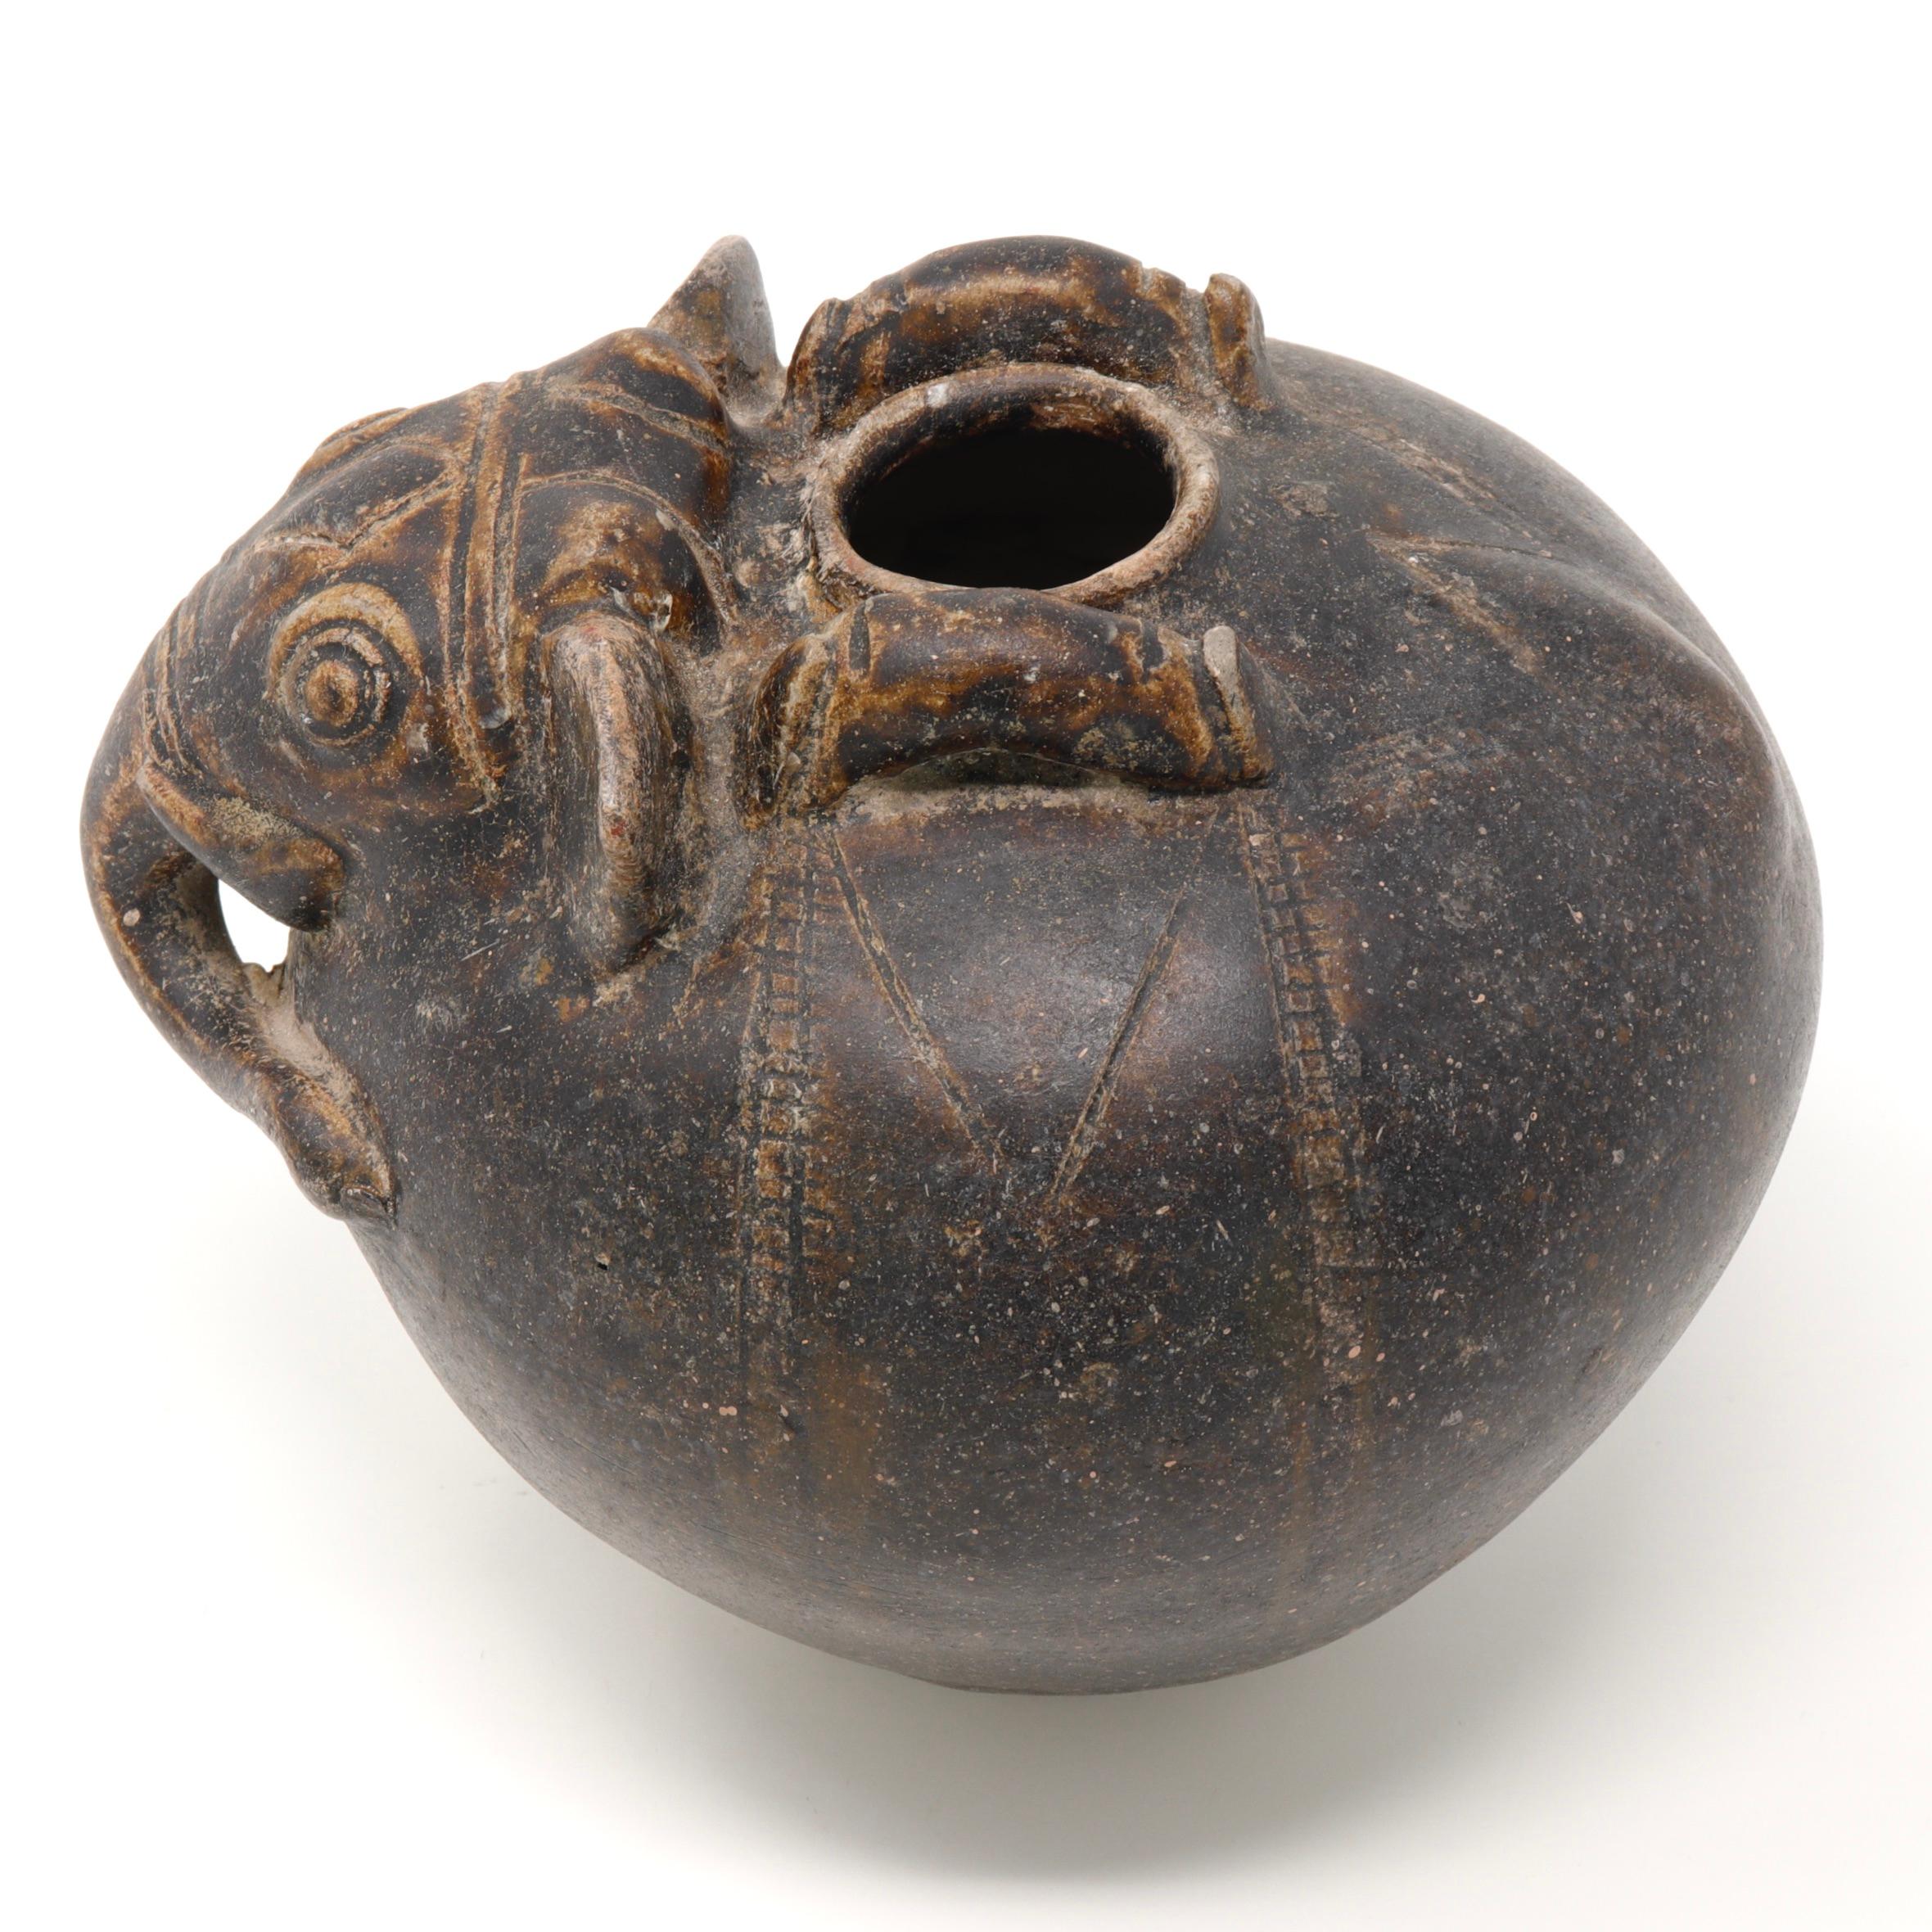 Pot à citronnier cambodgien en forme d'éléphant, 12e siècle. Une forme globulaire en grès avec une ouverture étroite sur le dessus pour la chaux éteinte. Le pot est modelé d'après une tête d'éléphant à l'épaule, avec une trompe, des défenses et de